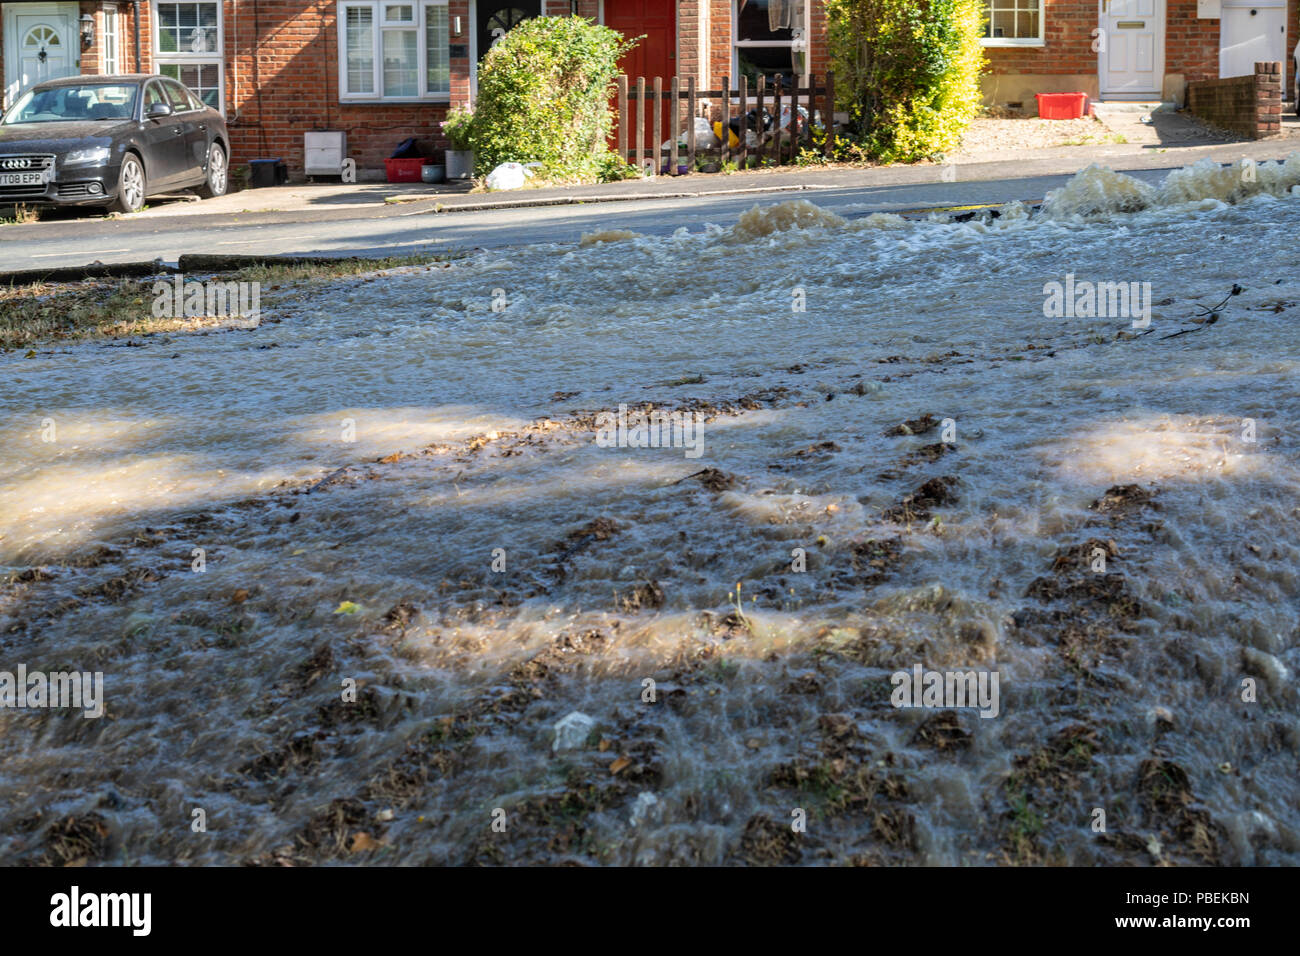 Essex, UK. 28. Juli 2018 Brentwood Essex, eine Wasserleitung platzte in Brentwood Essex Ursachen Überschwemmungen und Straße Chaos, lokale MP Alex Burghart visits die Szene Hilfe zu leisten. Kredit Ian Davidson/Alamy leben Nachrichten Stockfoto